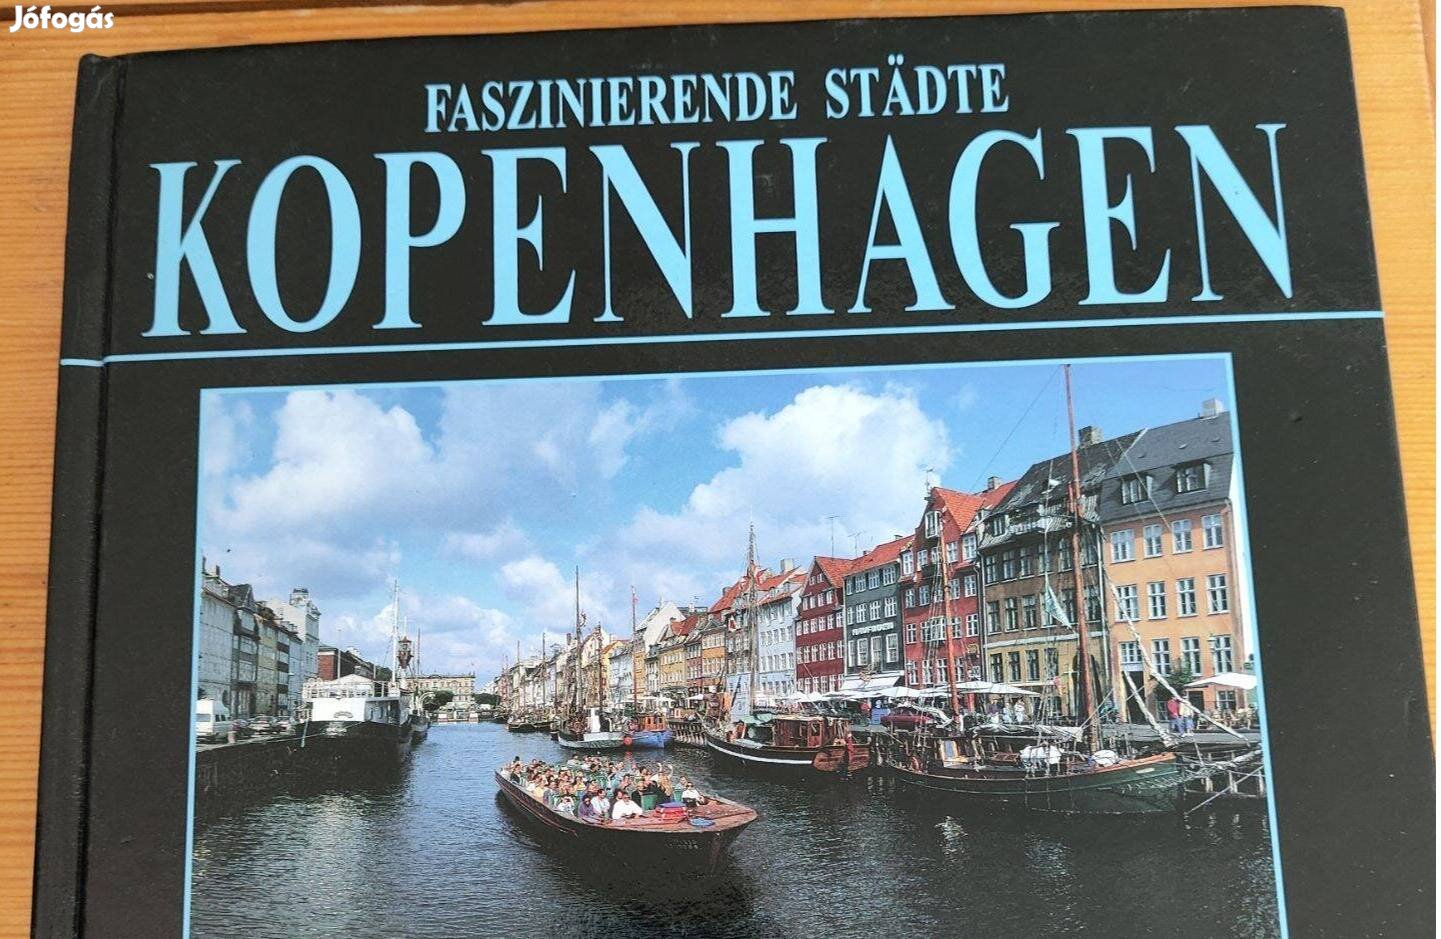 Kopenhagen - Faszinierende